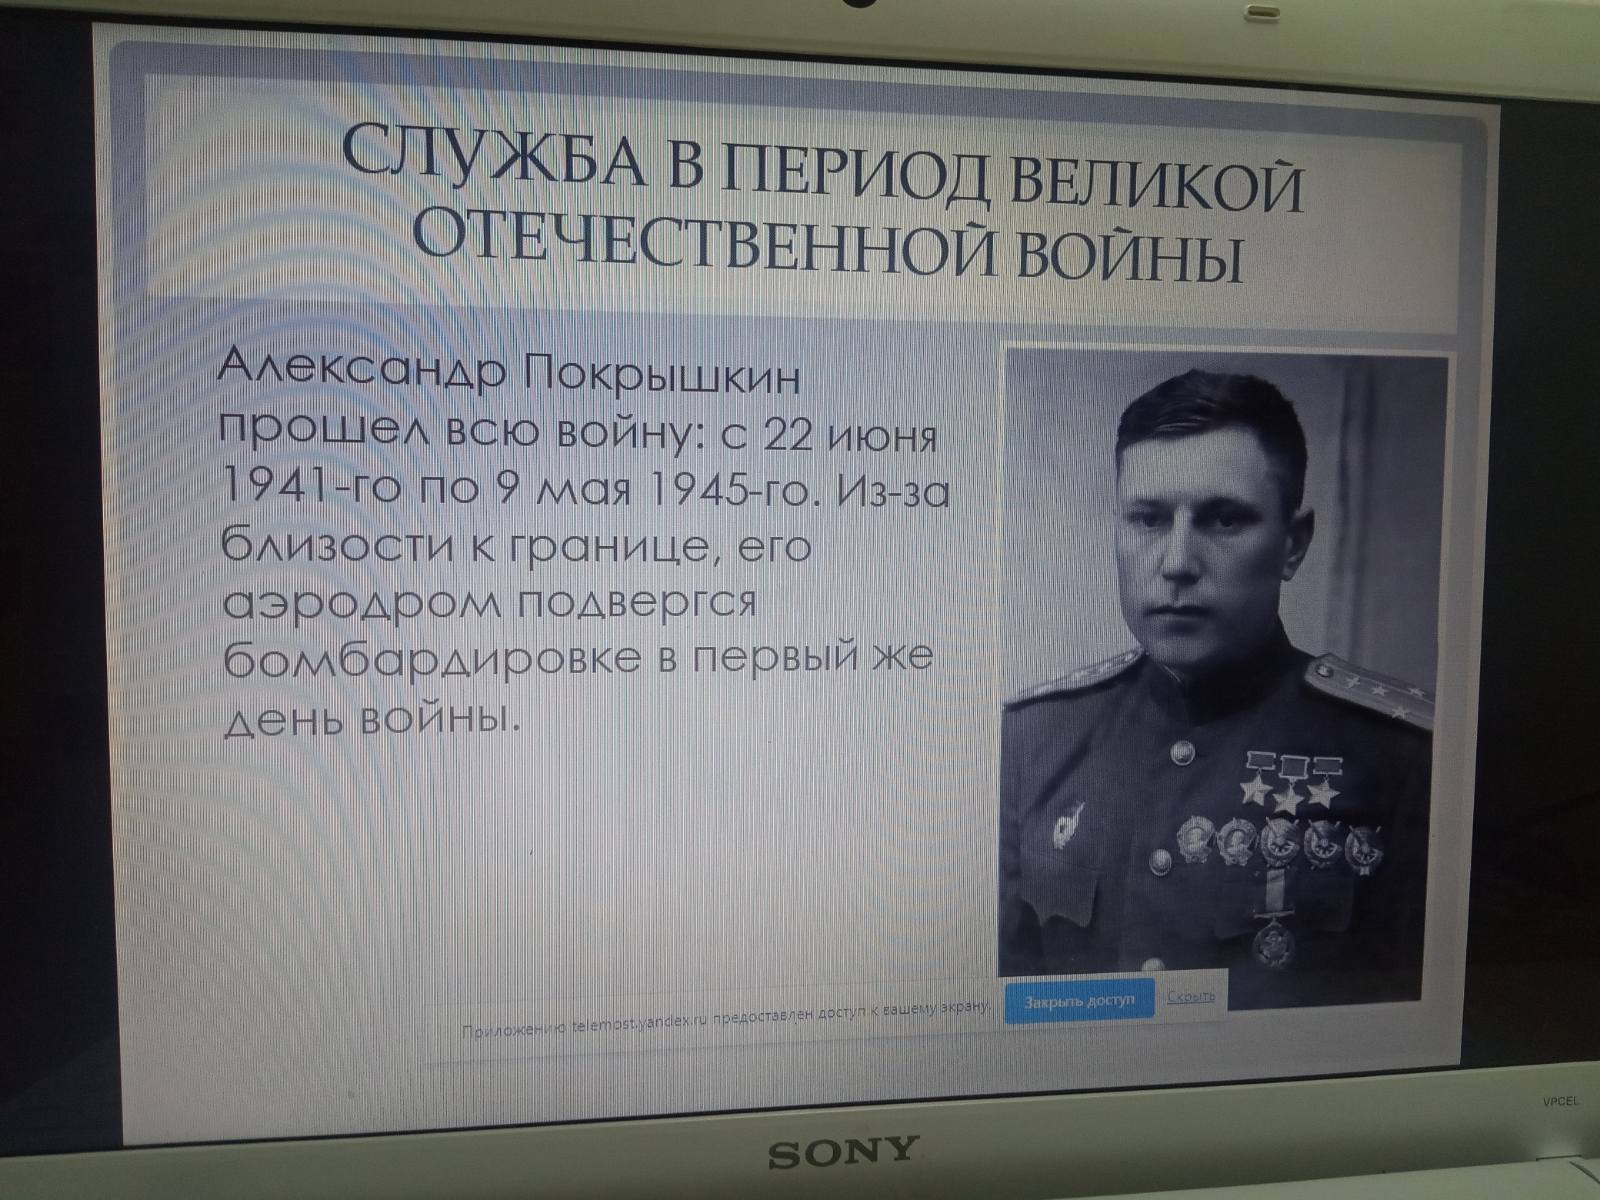 К 110-летию Трижды героя Советского Союза Александра Покрышкина.